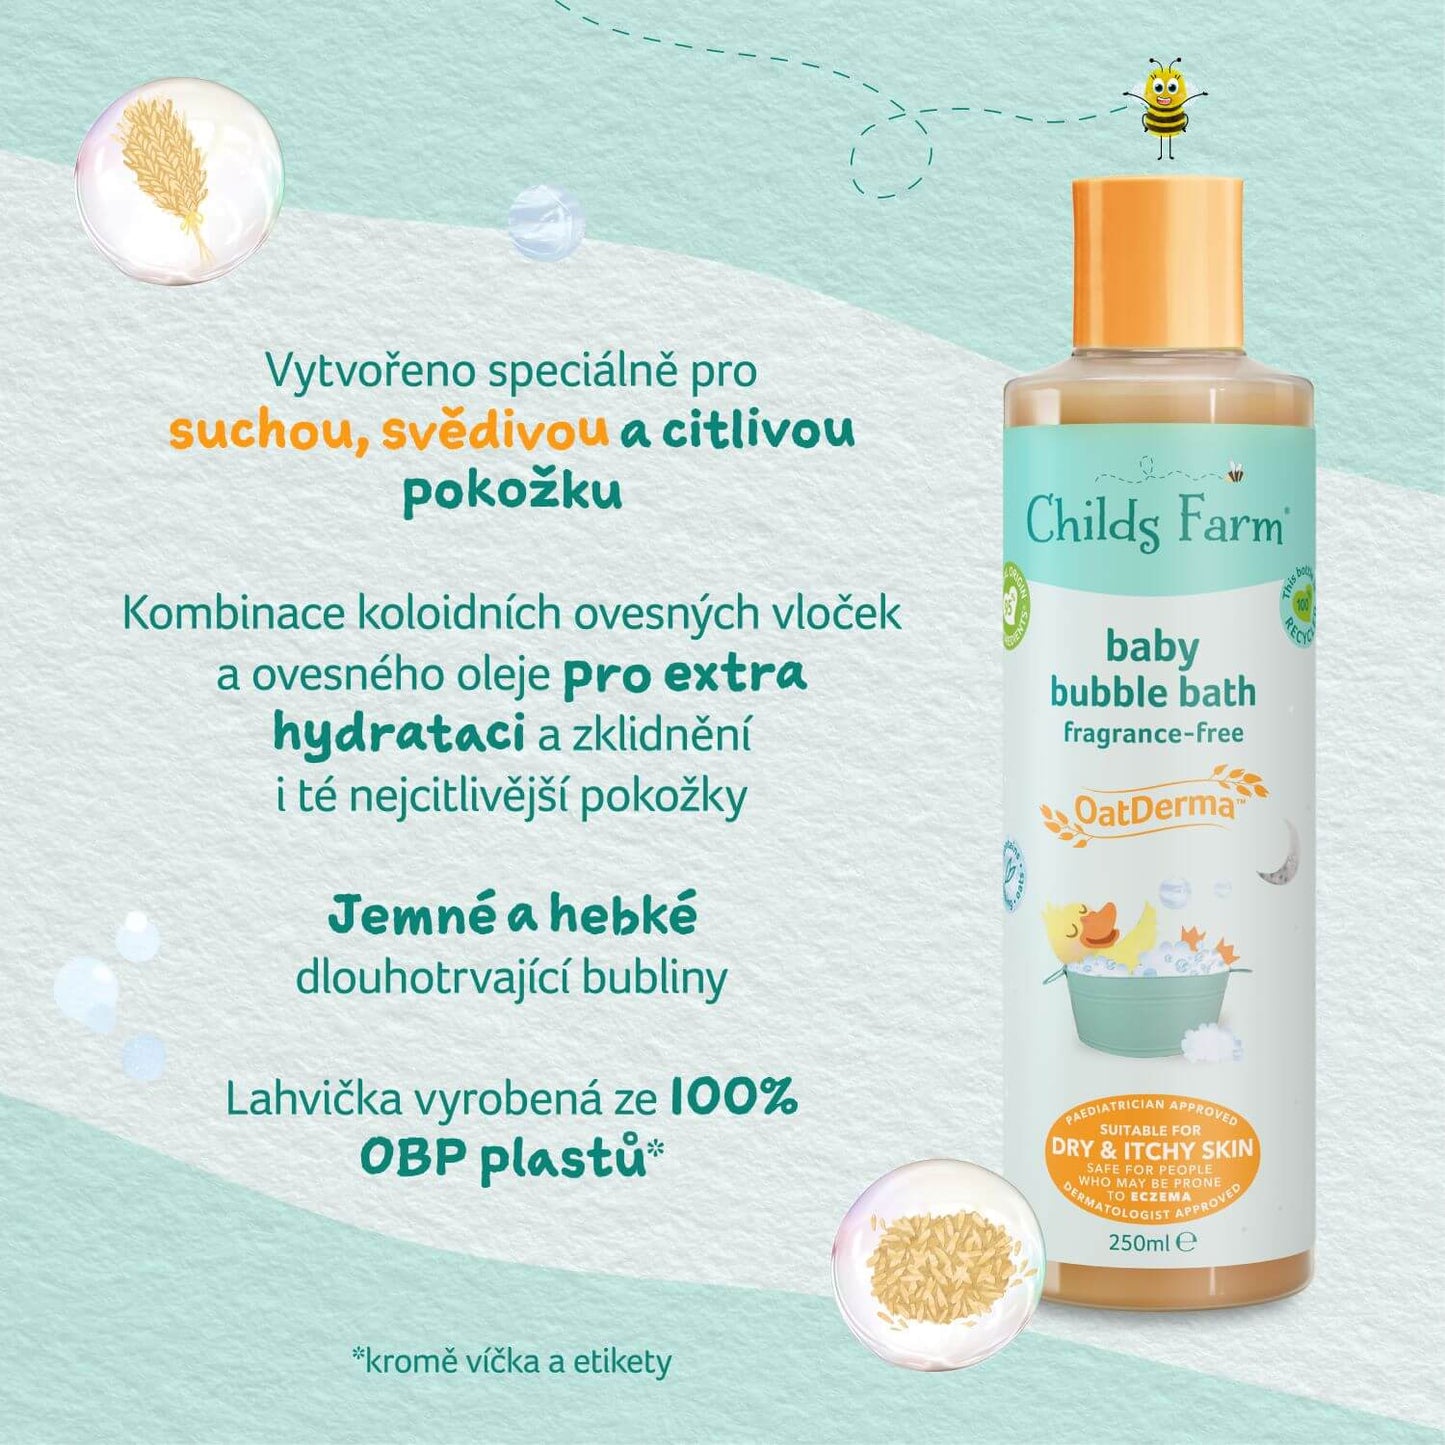 Childs Farm baby OatDerma™ bublinkový kúpeľ bez parfumácie